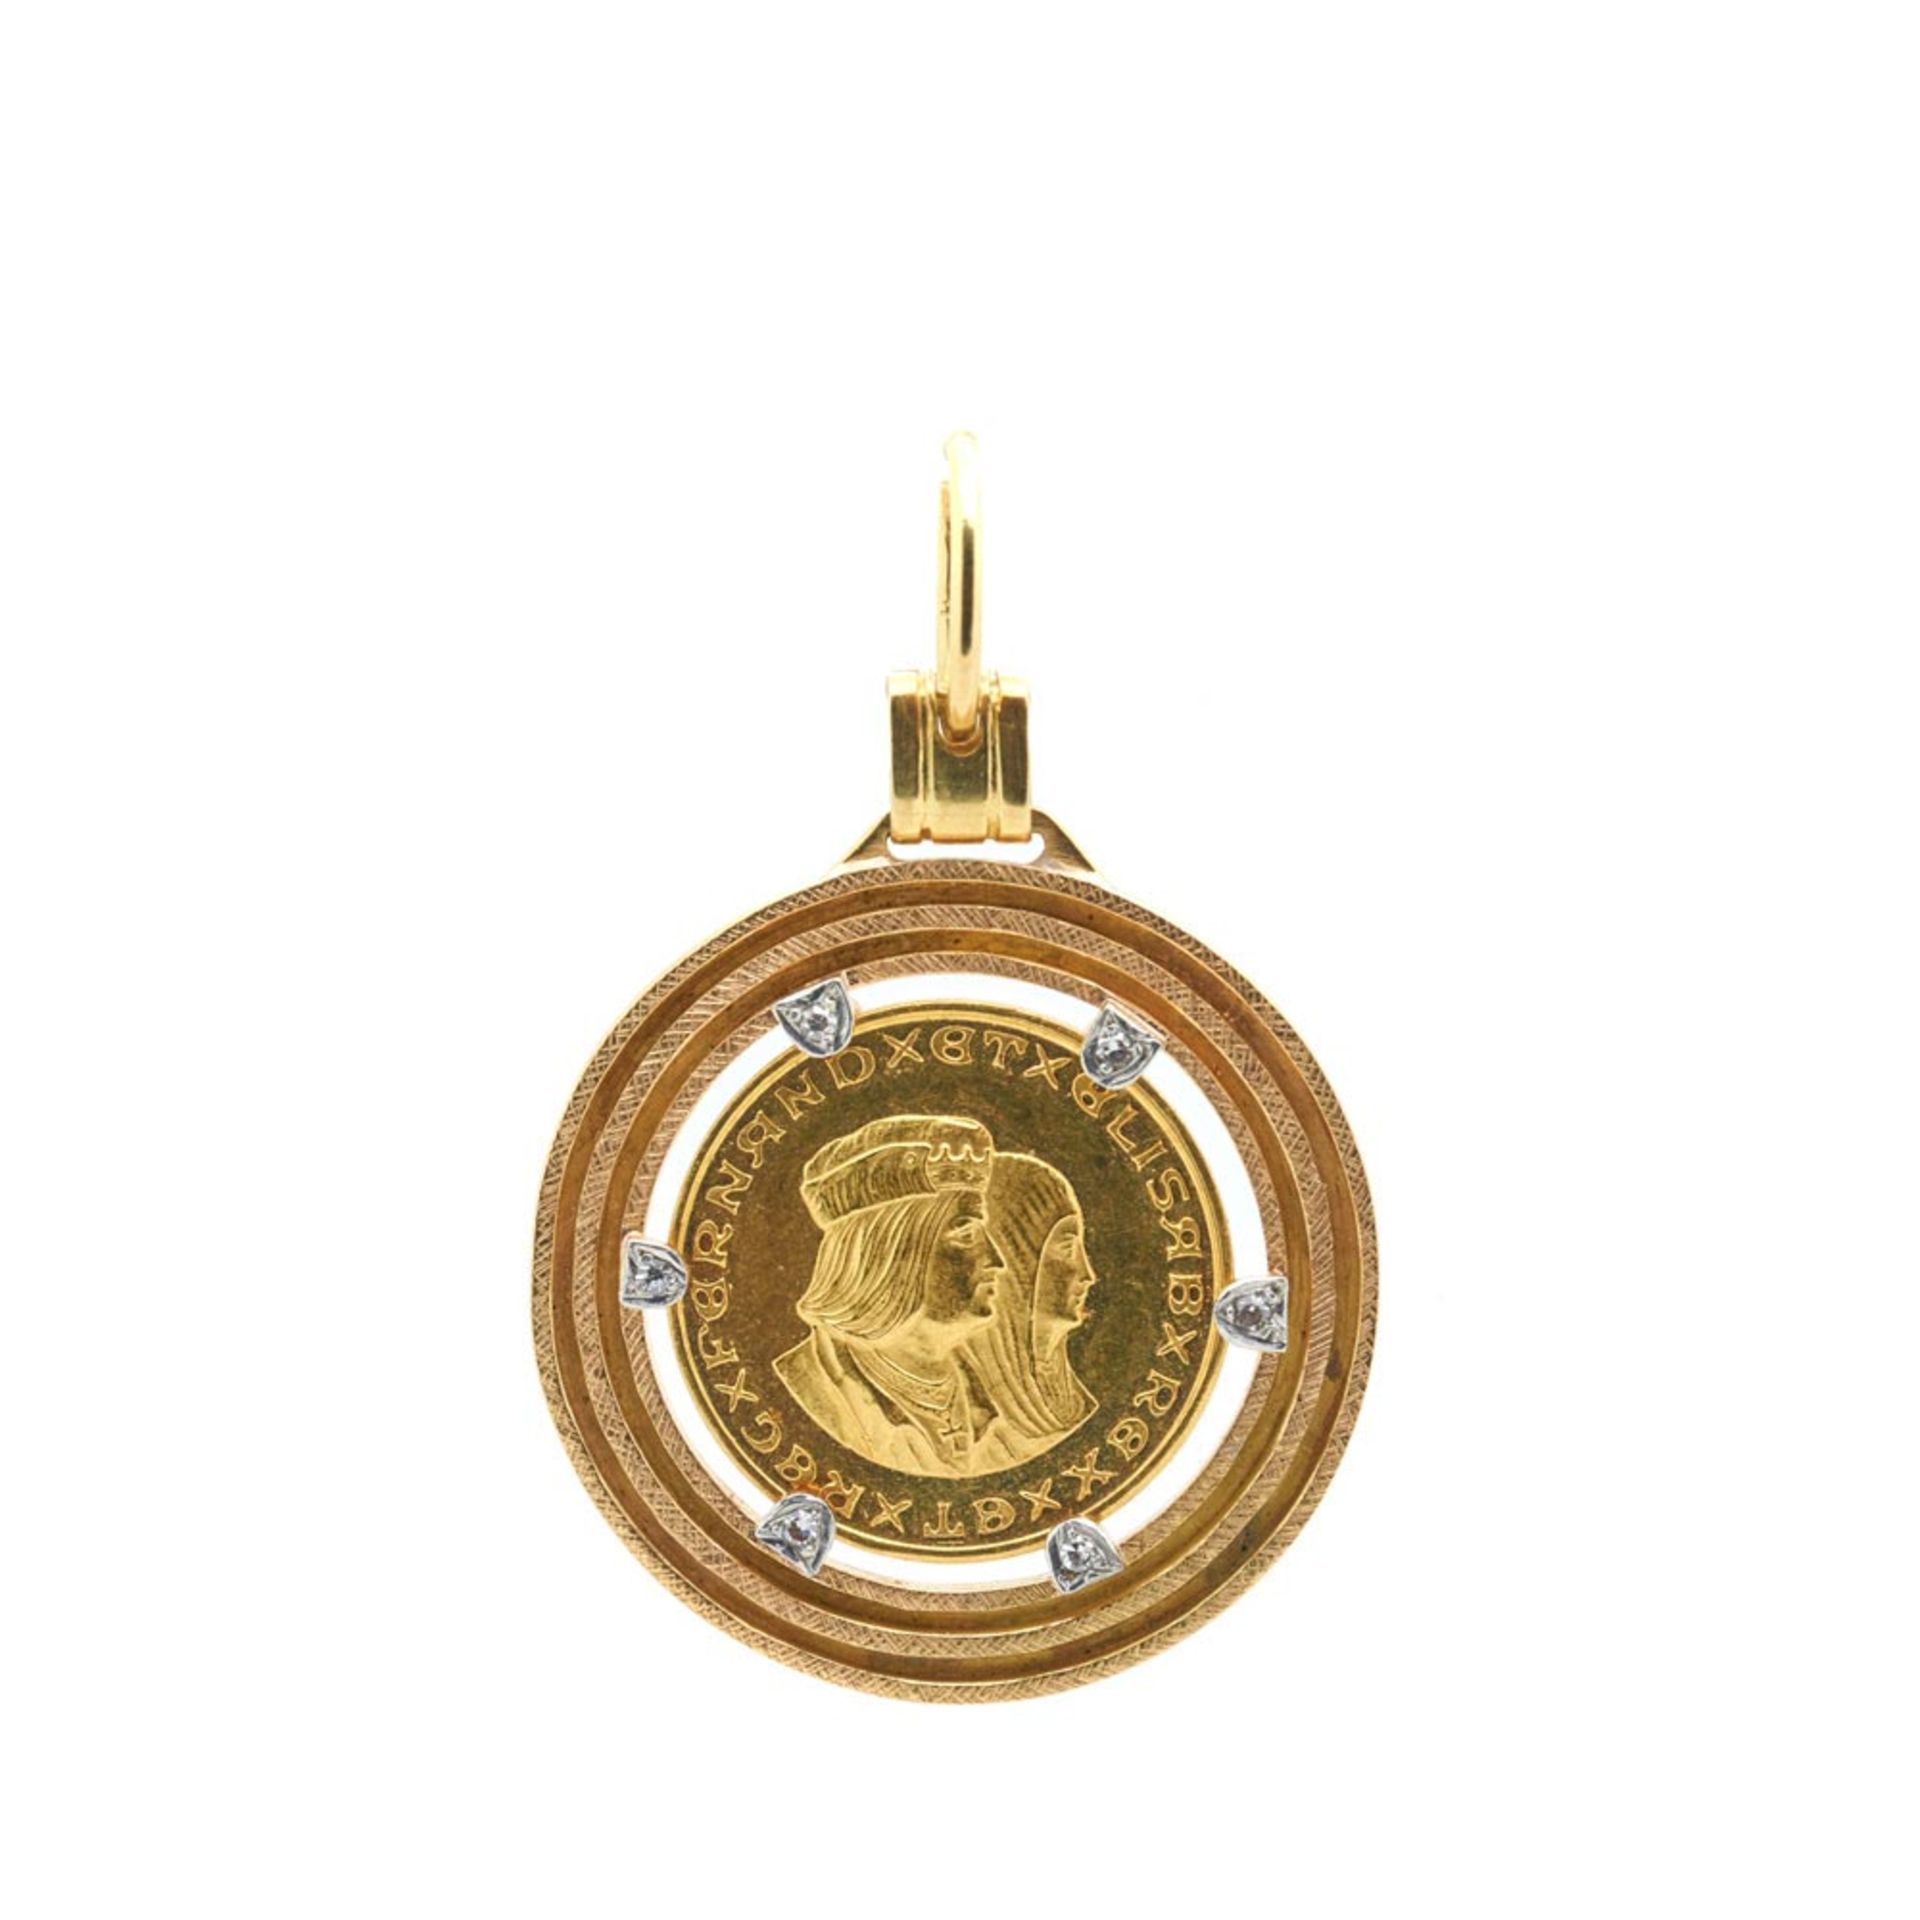 Gold, white gold and diamonds coin pendant Colgante en oro bicolor con medalla conmemorativa de